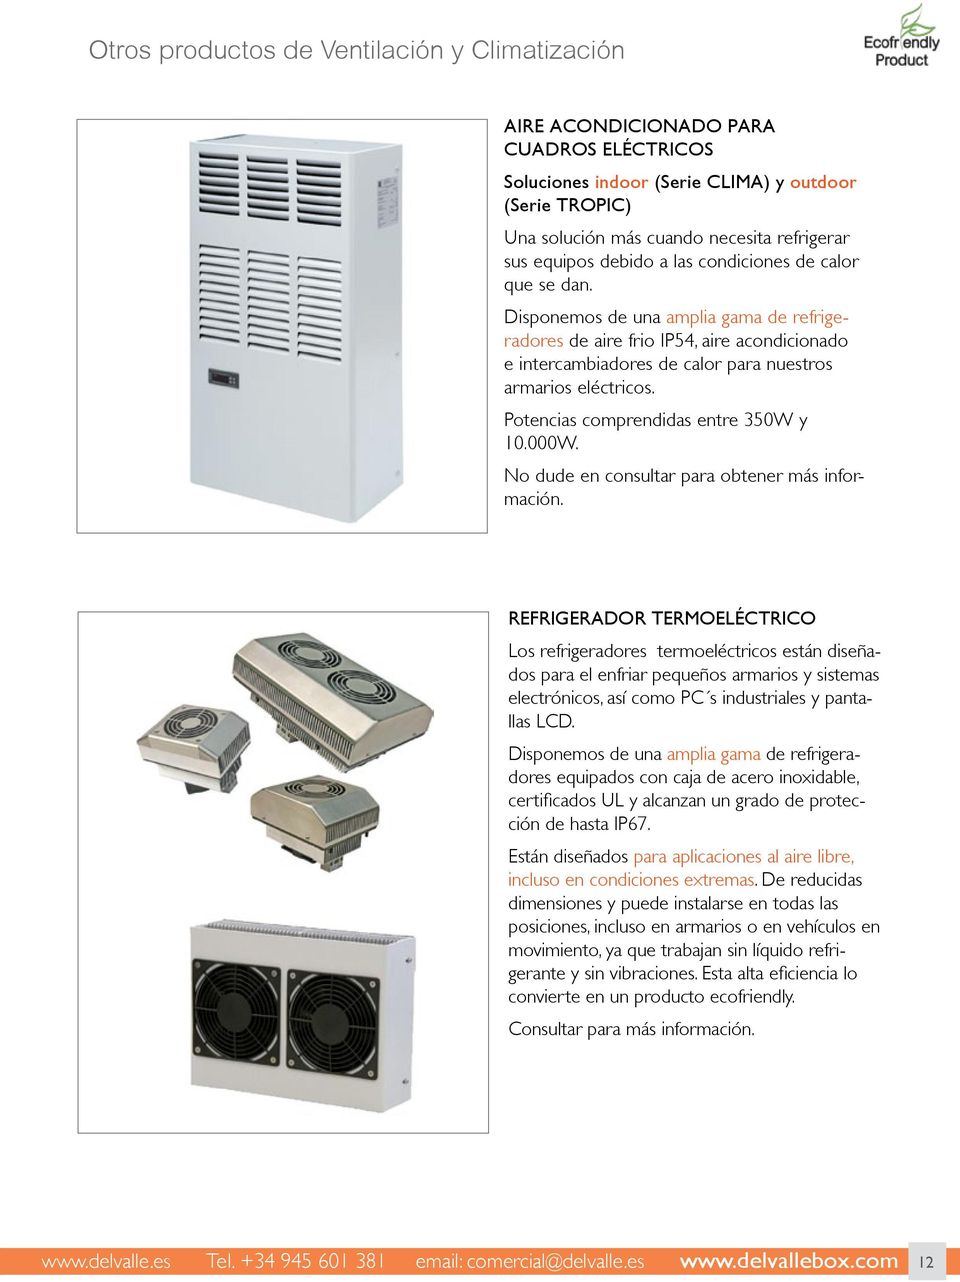 Disponemos de una amplia gama de refrigeradores de aire frio IP54, aire acondicionado e intercambiadores de calor para nuestros armarios eléctricos. Potencias comprendidas entre 350W y 10.000W.